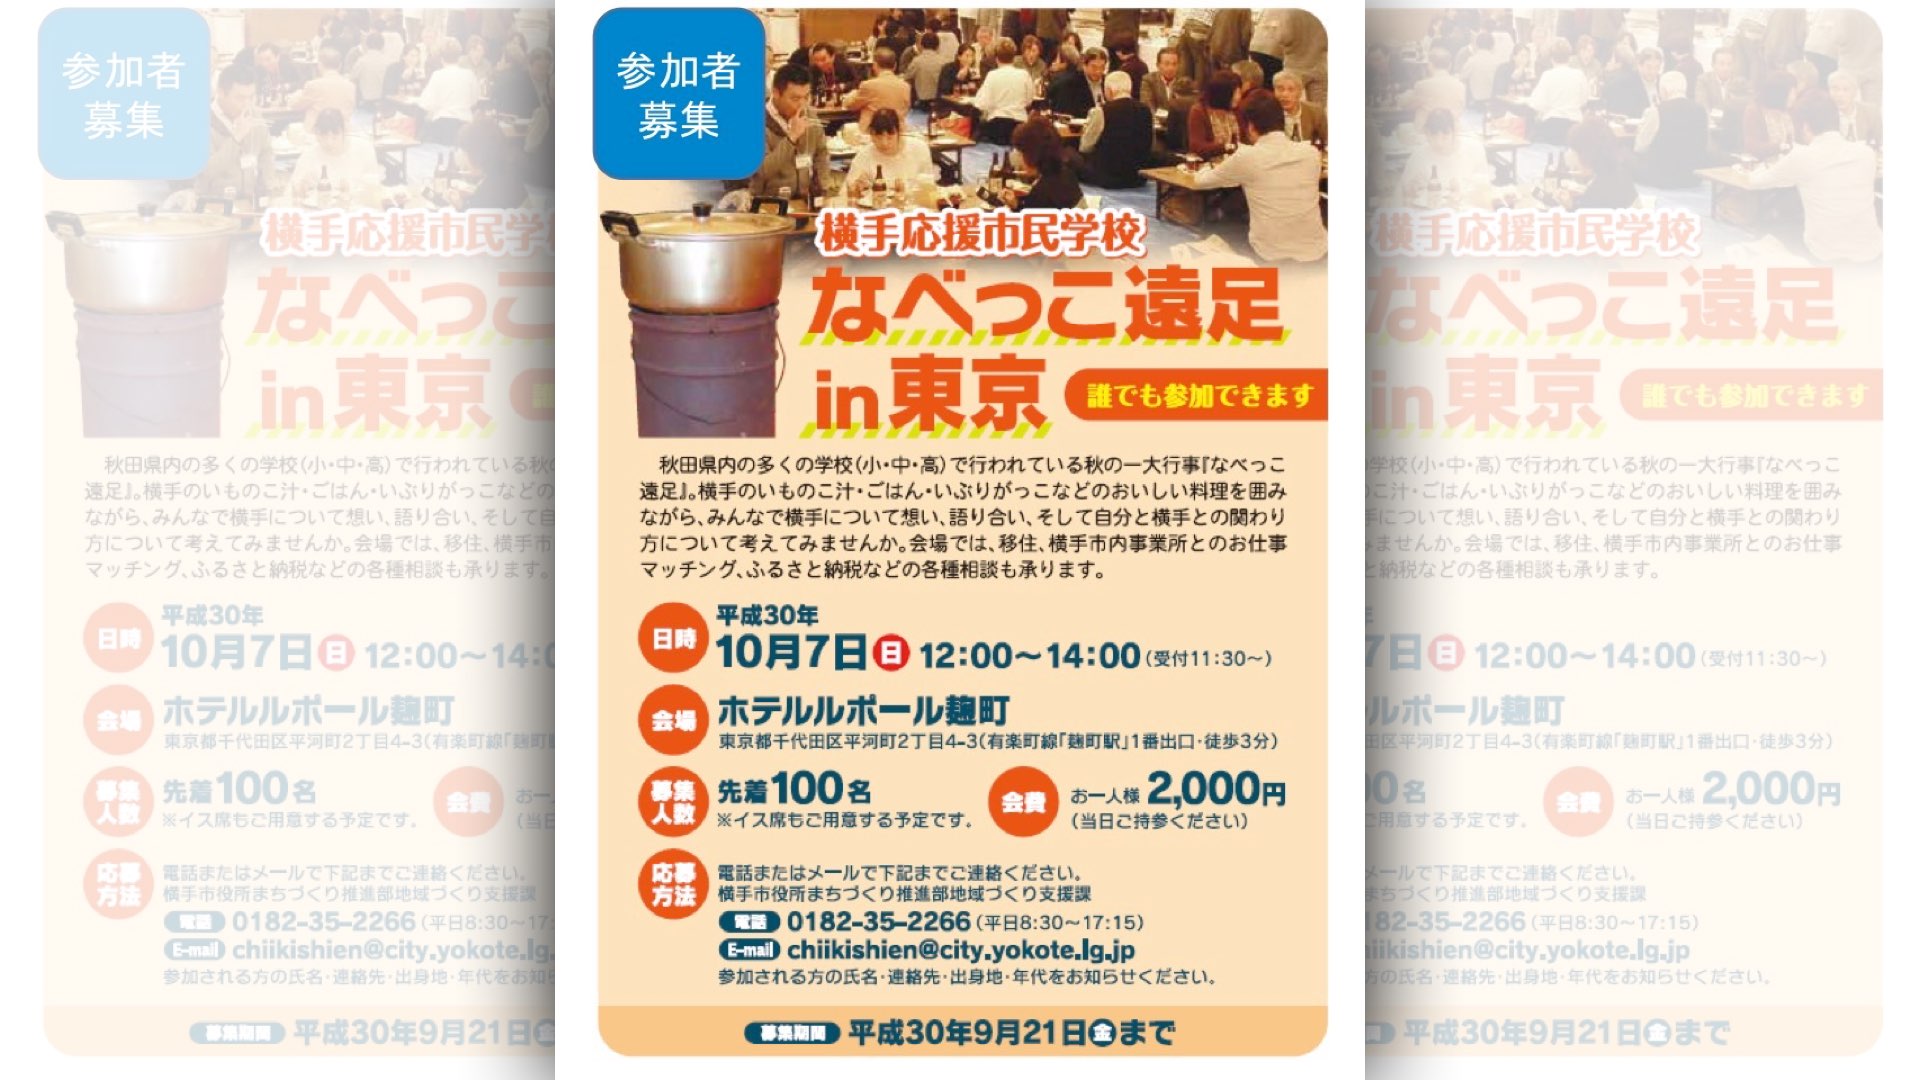 横手応援市民学校「なべっこ遠足in東京」が開催されます